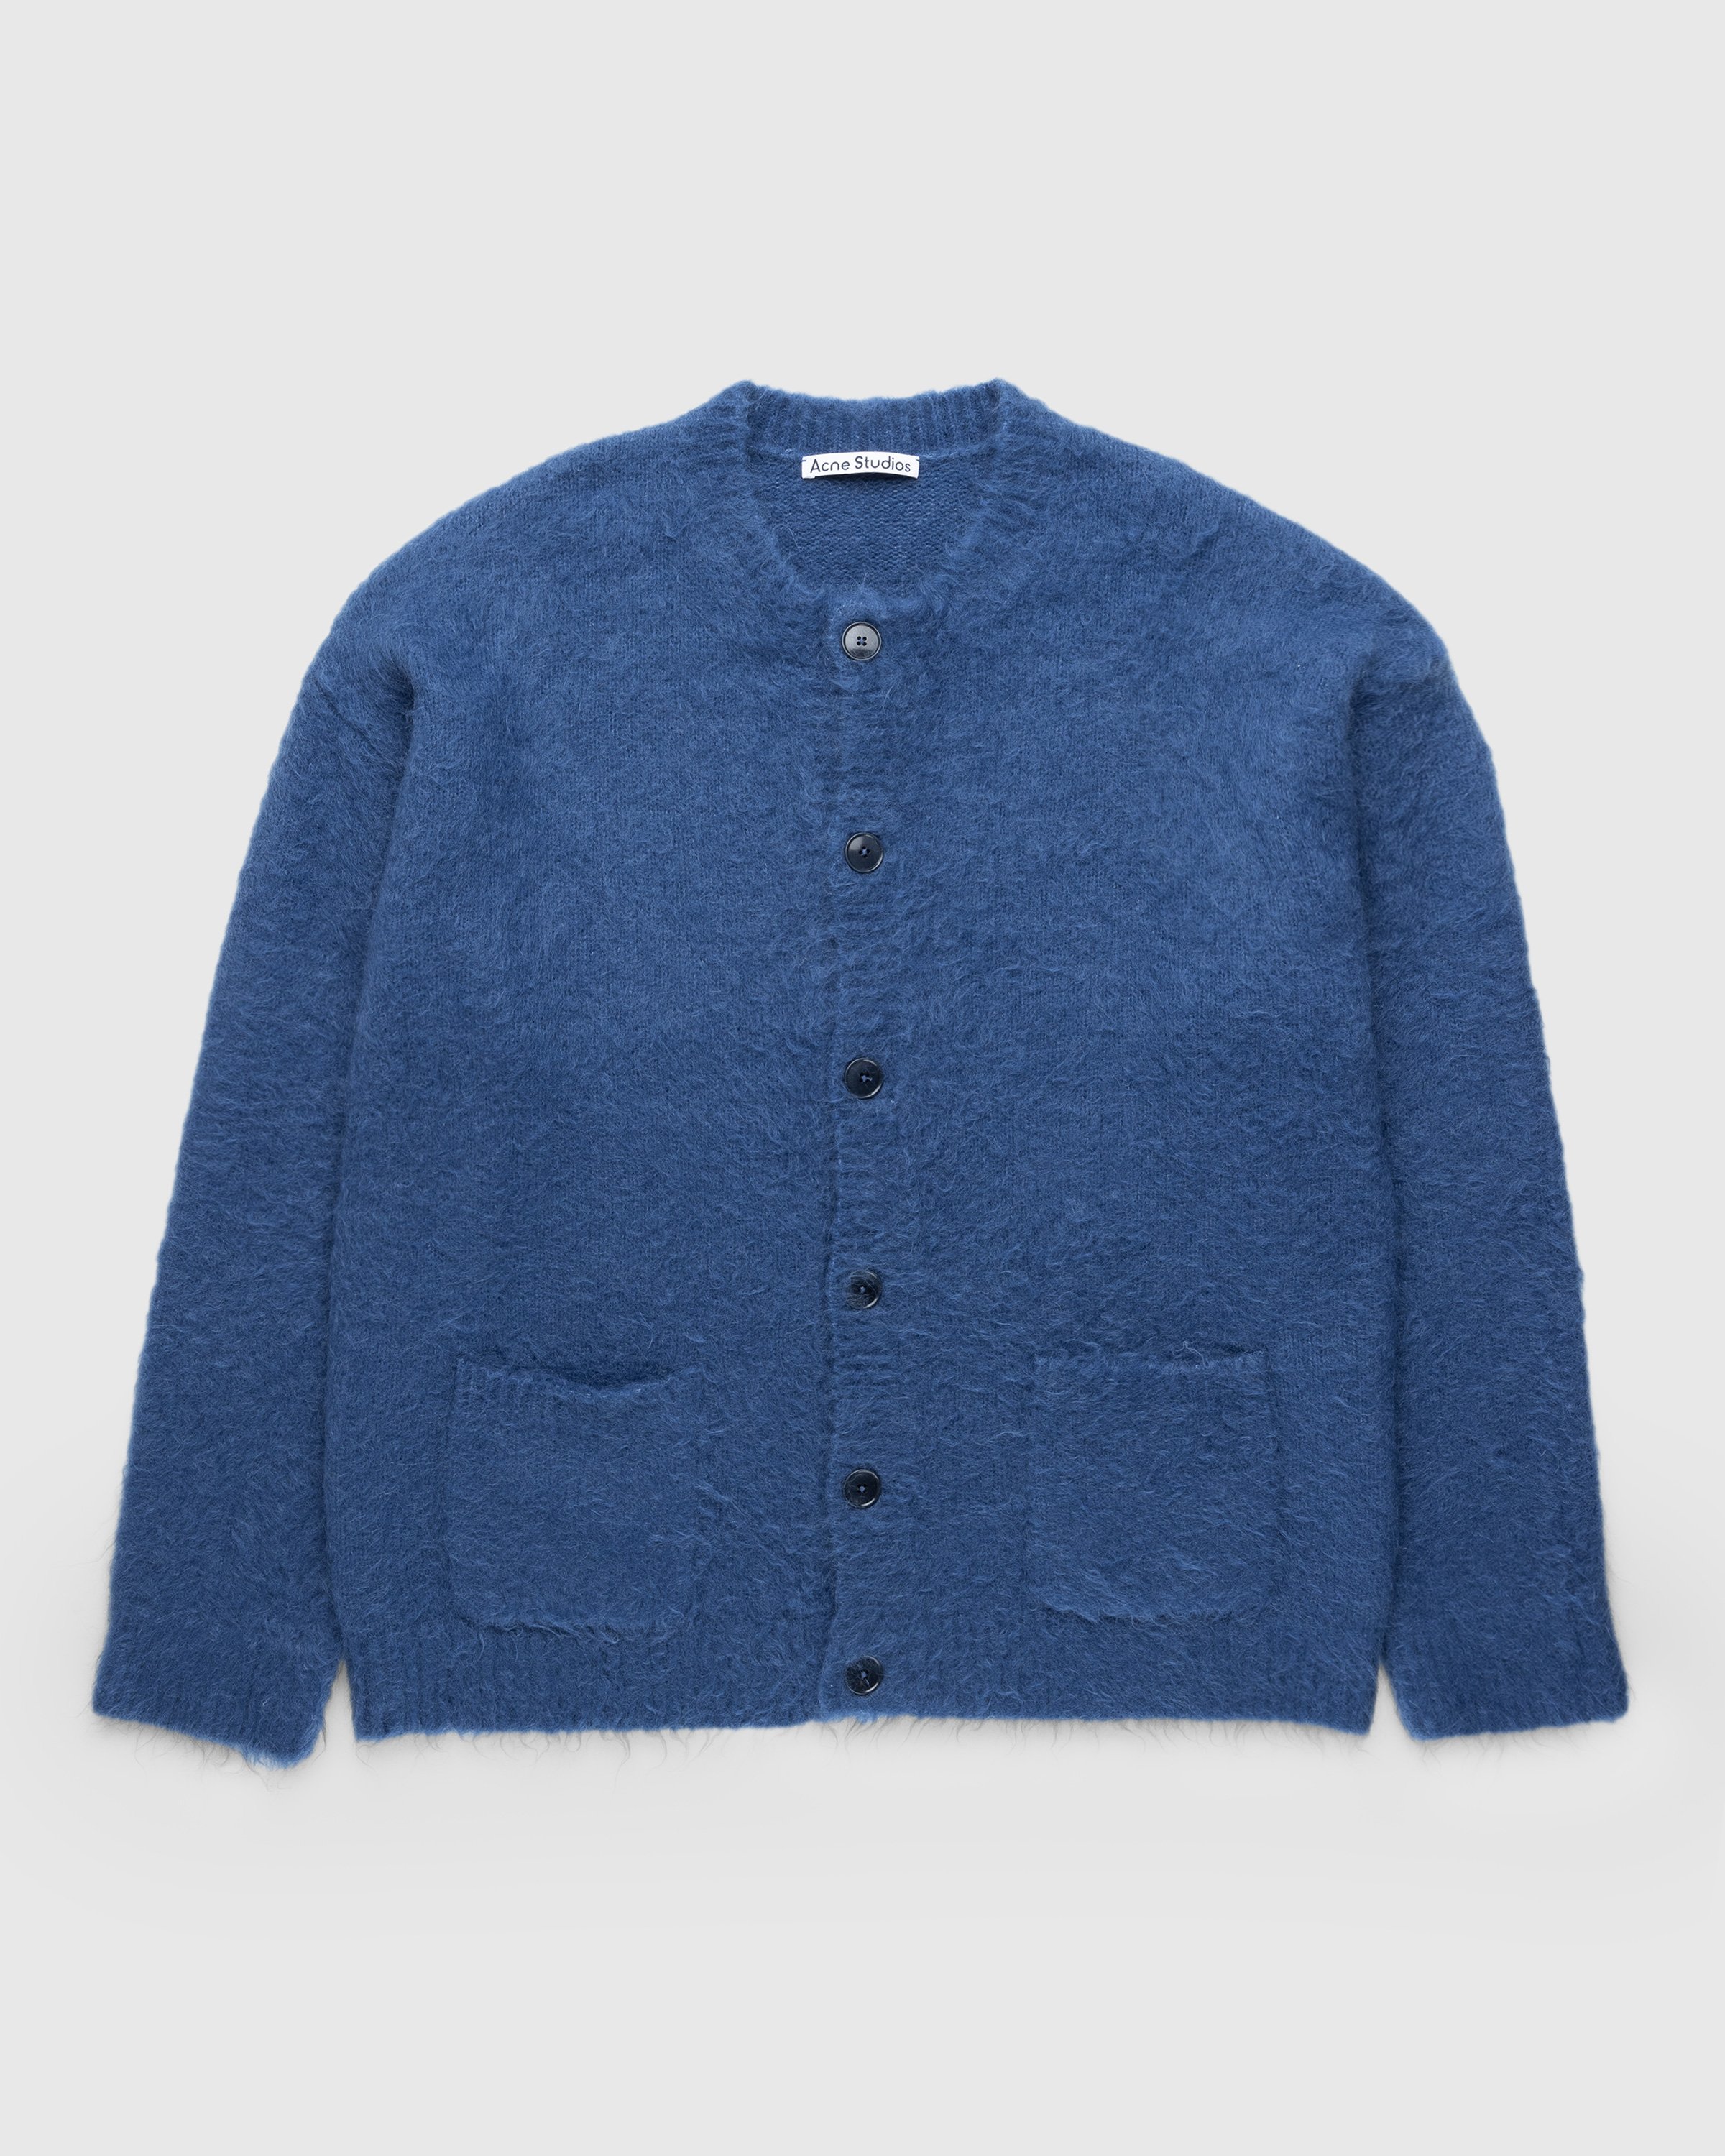 Acne Studios - Brushed Wool Cardigan Blue - Clothing - Blue - Image 1